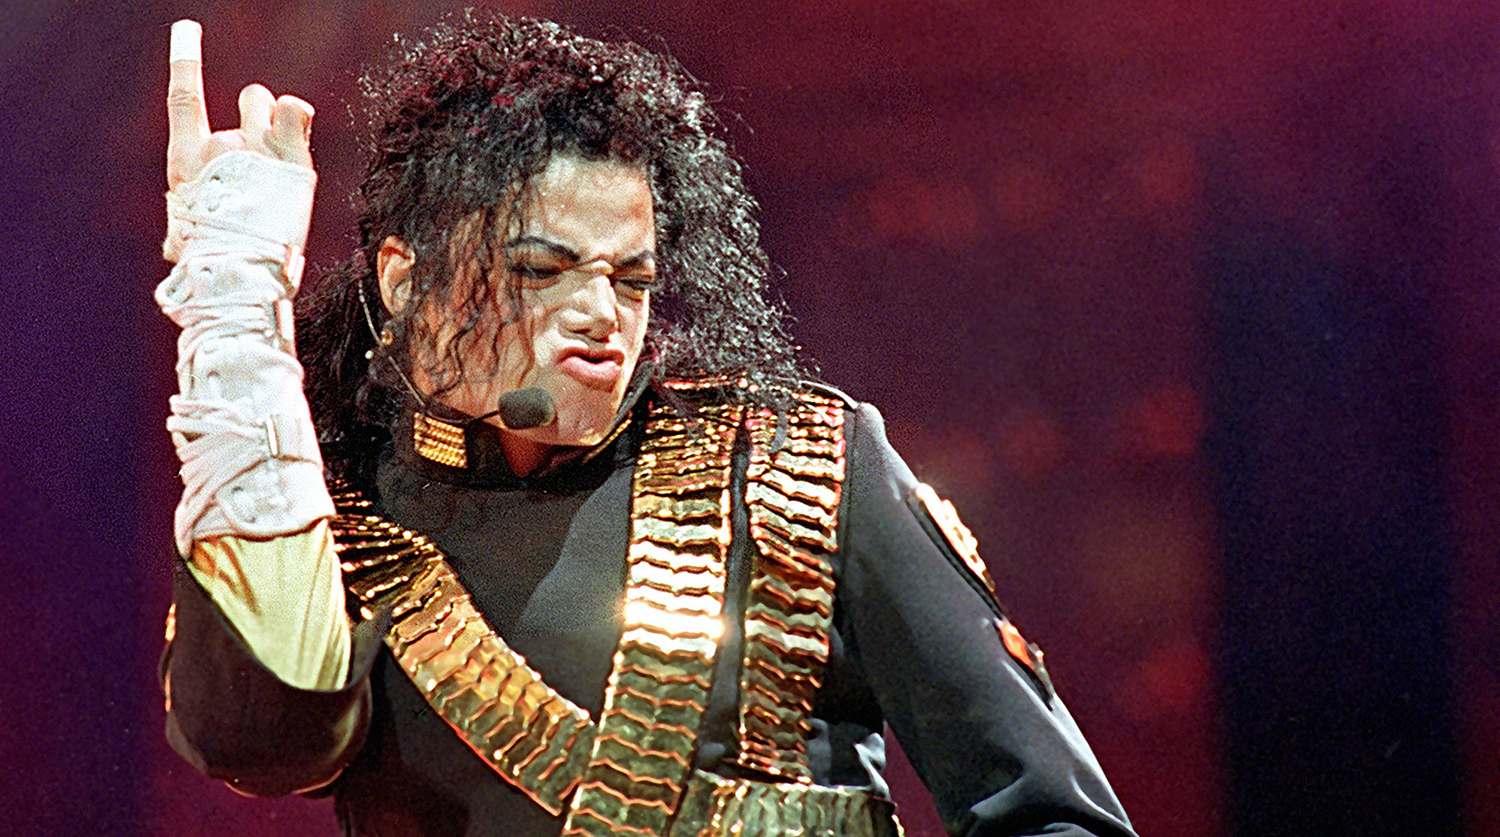 Обвинителей Майкла Джексона заподозрили в попытке получить фото его гениталий